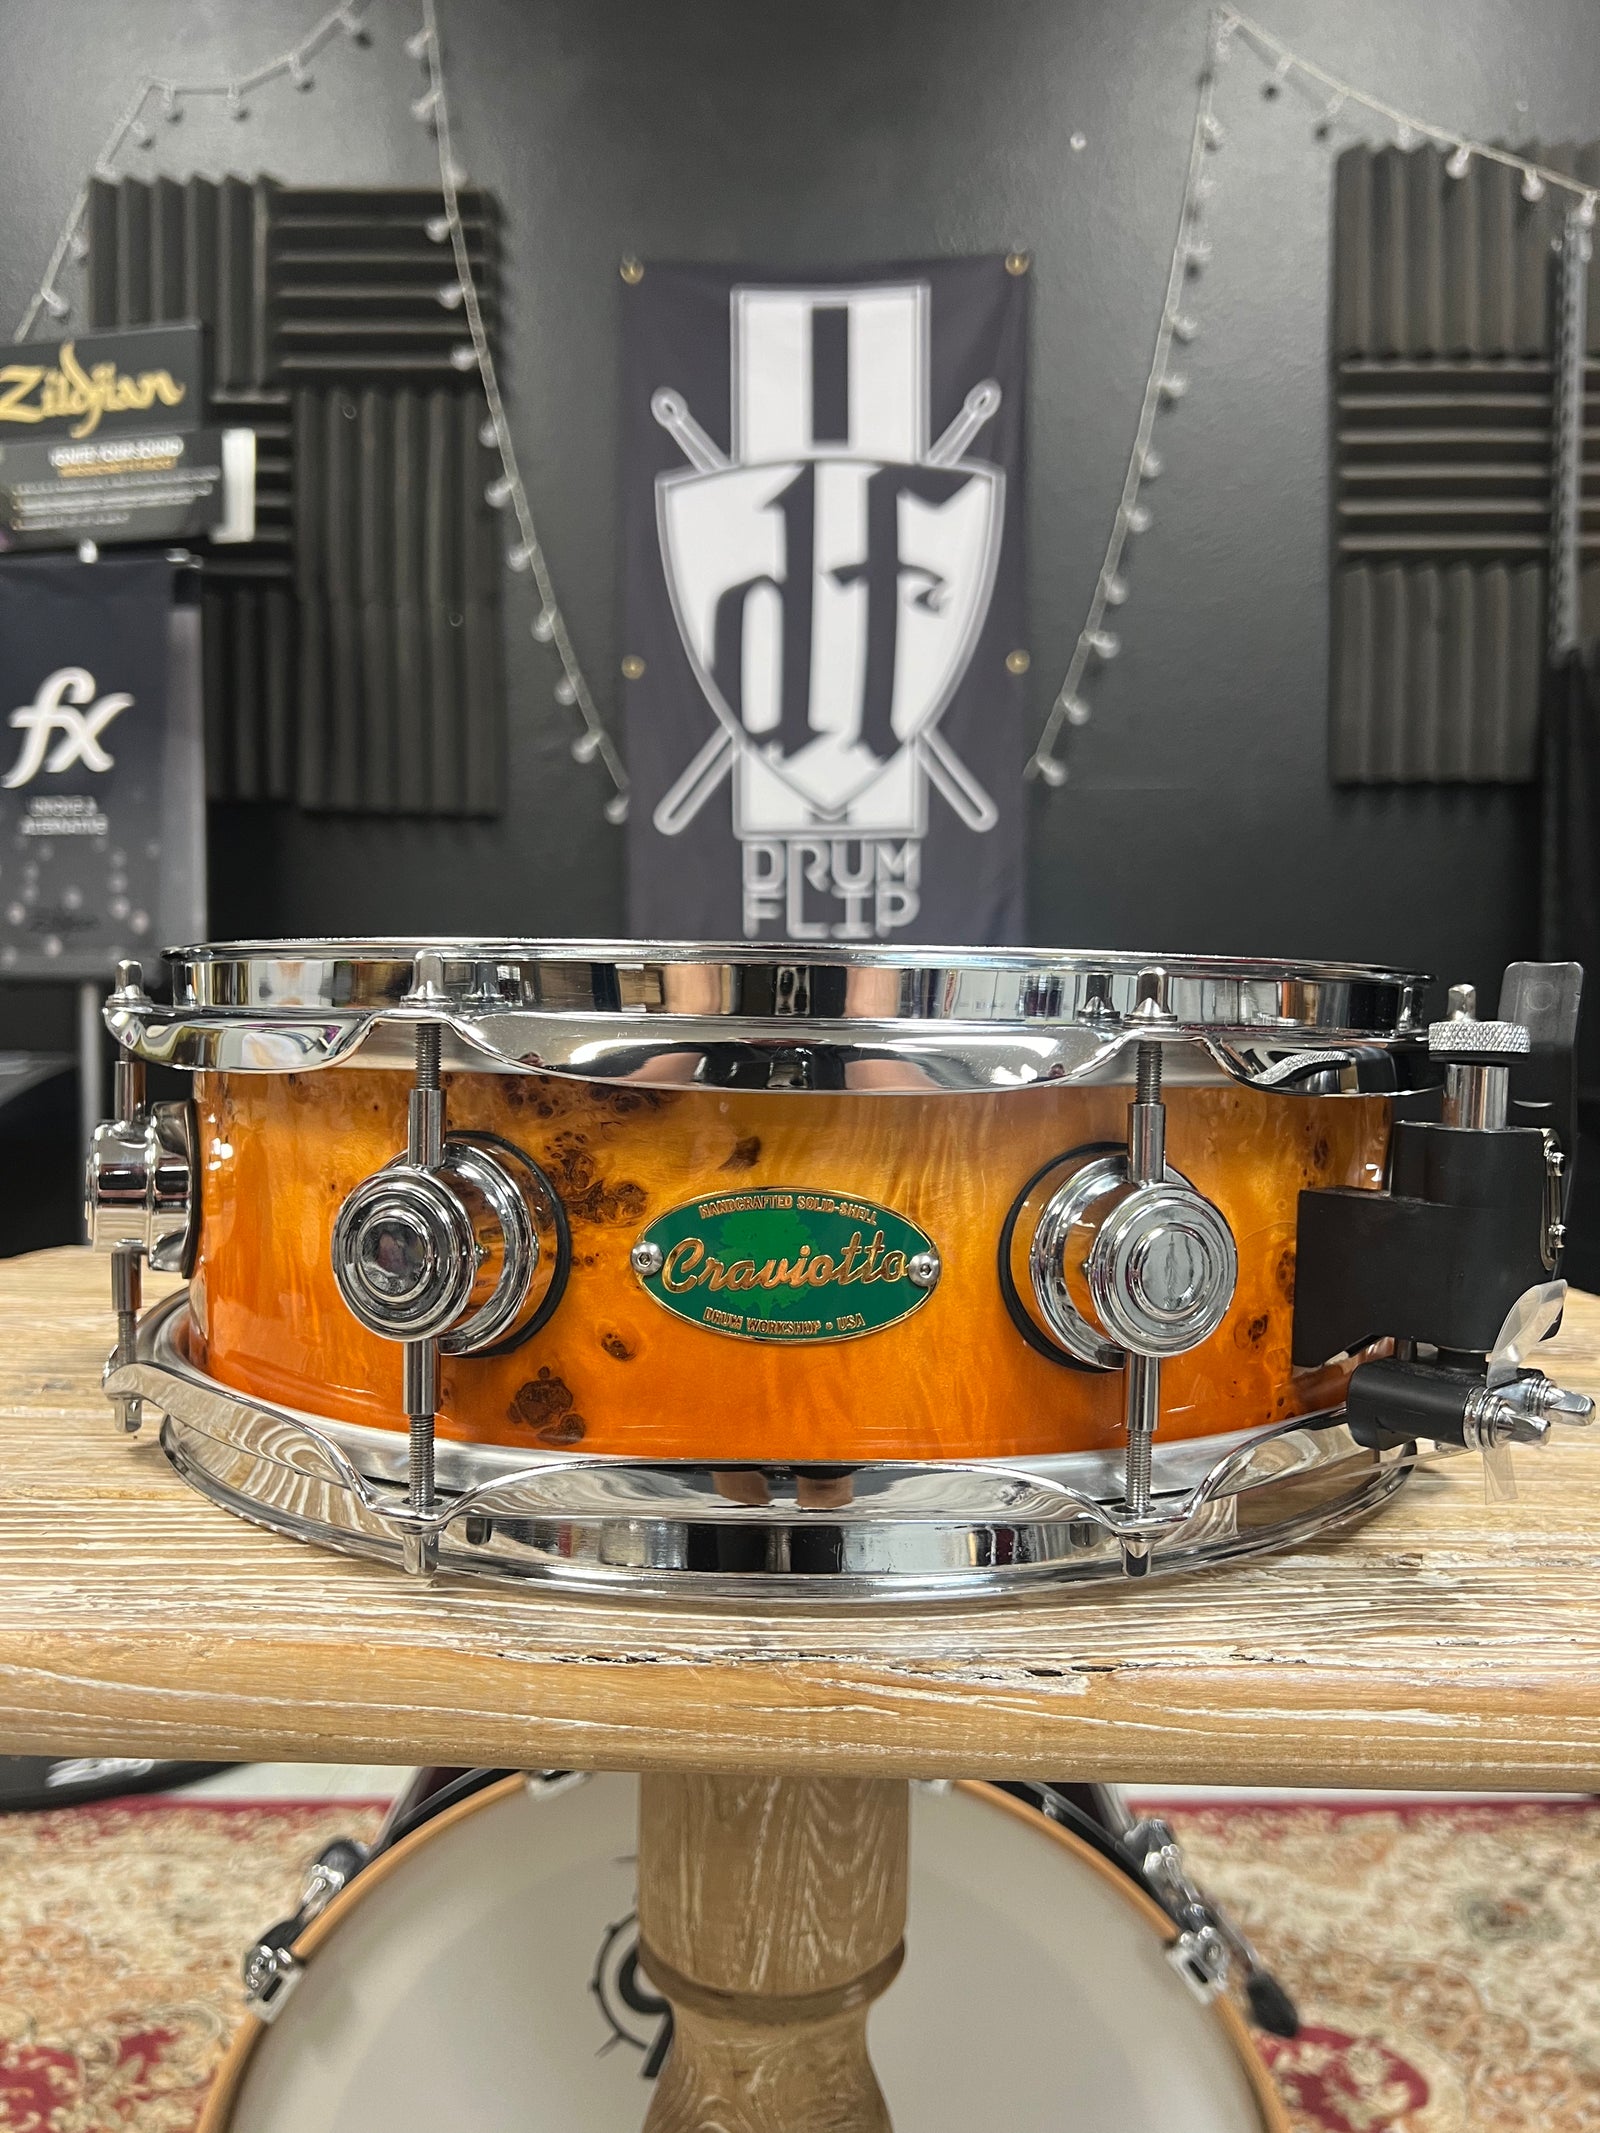 Drum Flip - $129 Pacific 14x5” hammered brass snare drum.